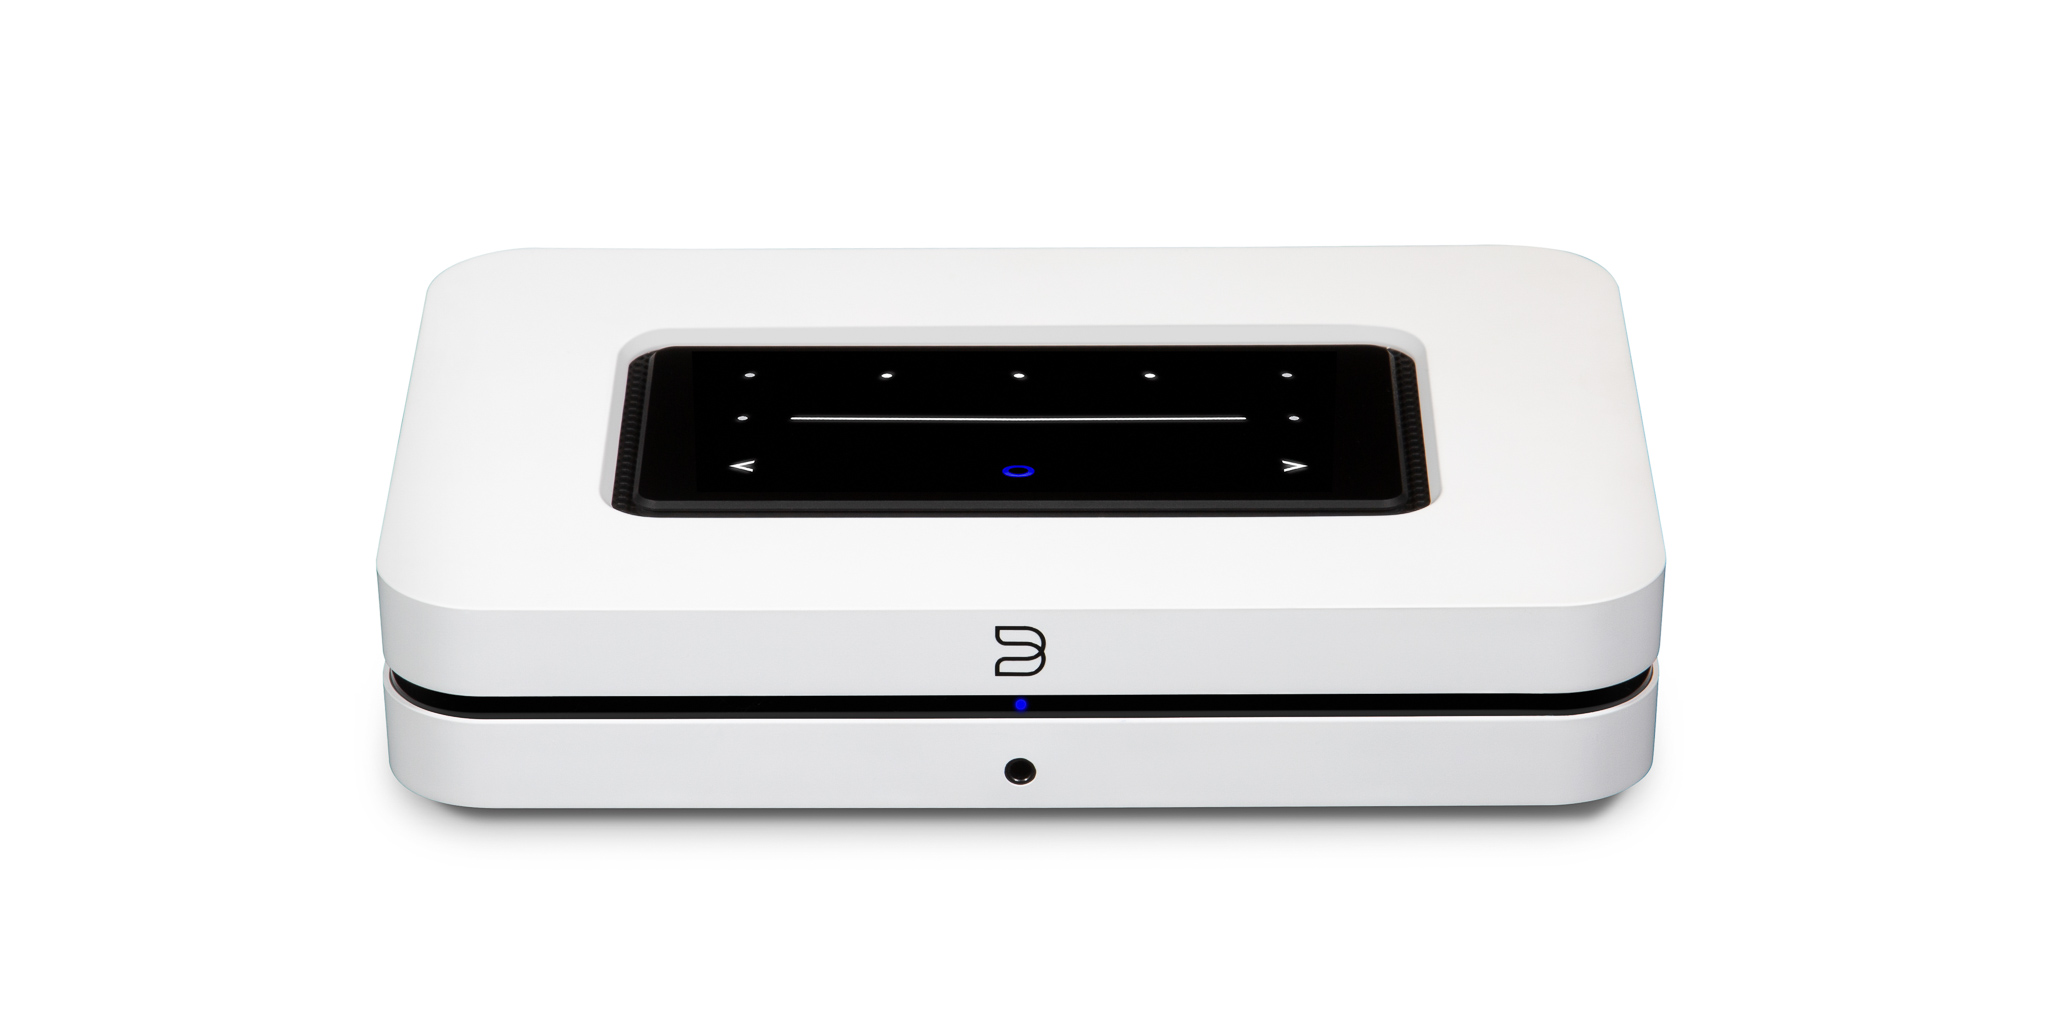 BLUESOUND NODE, langaton Hi-Res monihuone verkkosoitin (N130) BluOS striimeri, HDMI (eArc) liitäntä televisiolle, Airplay 2 tuki, kaksisuuntainen Bluetooth